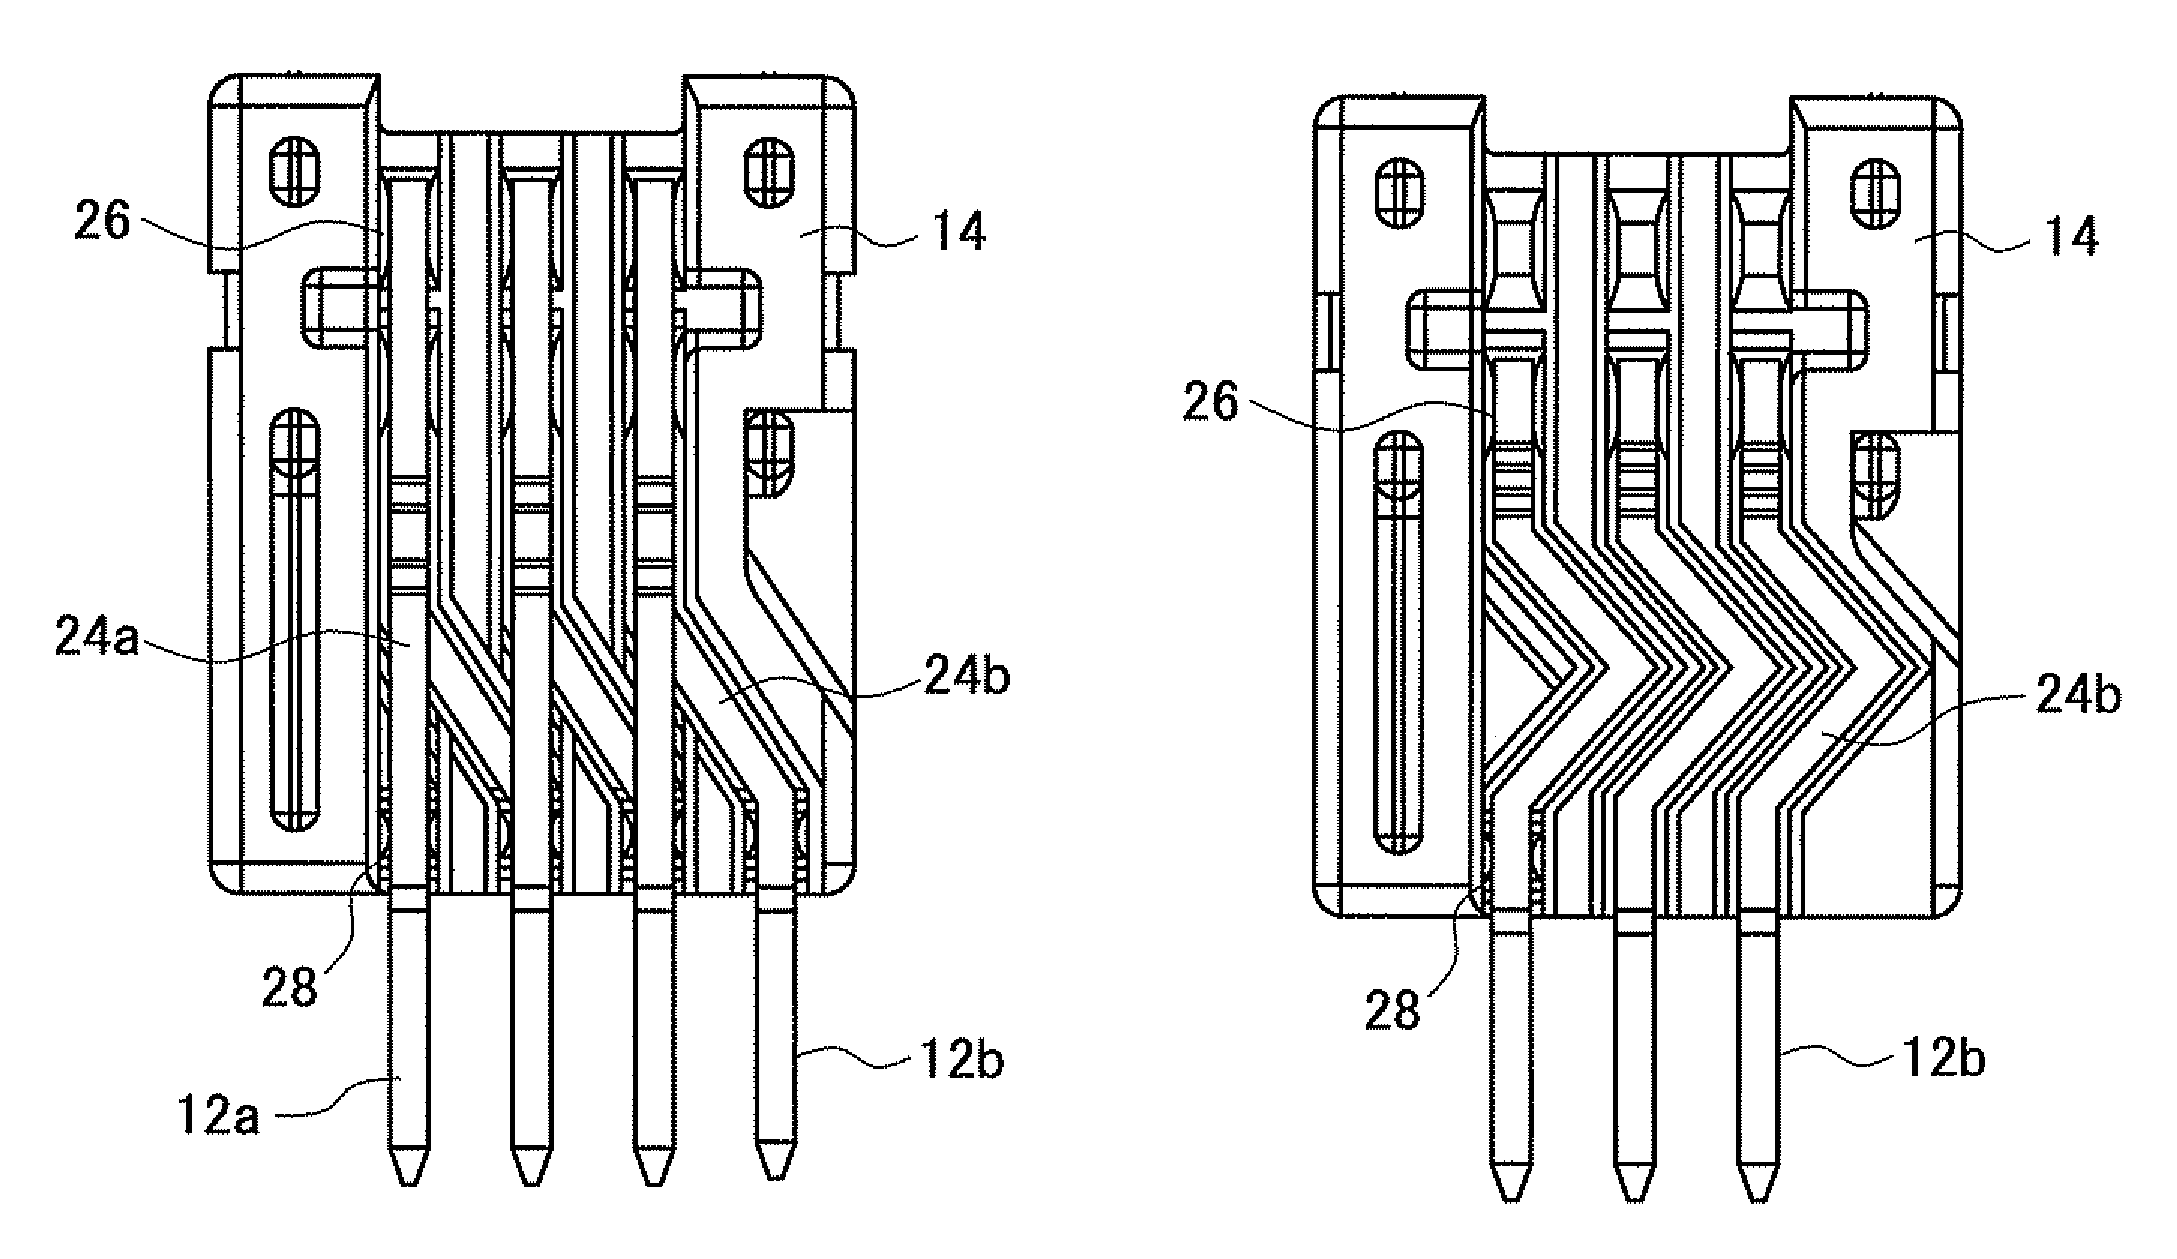 Circuit board connector